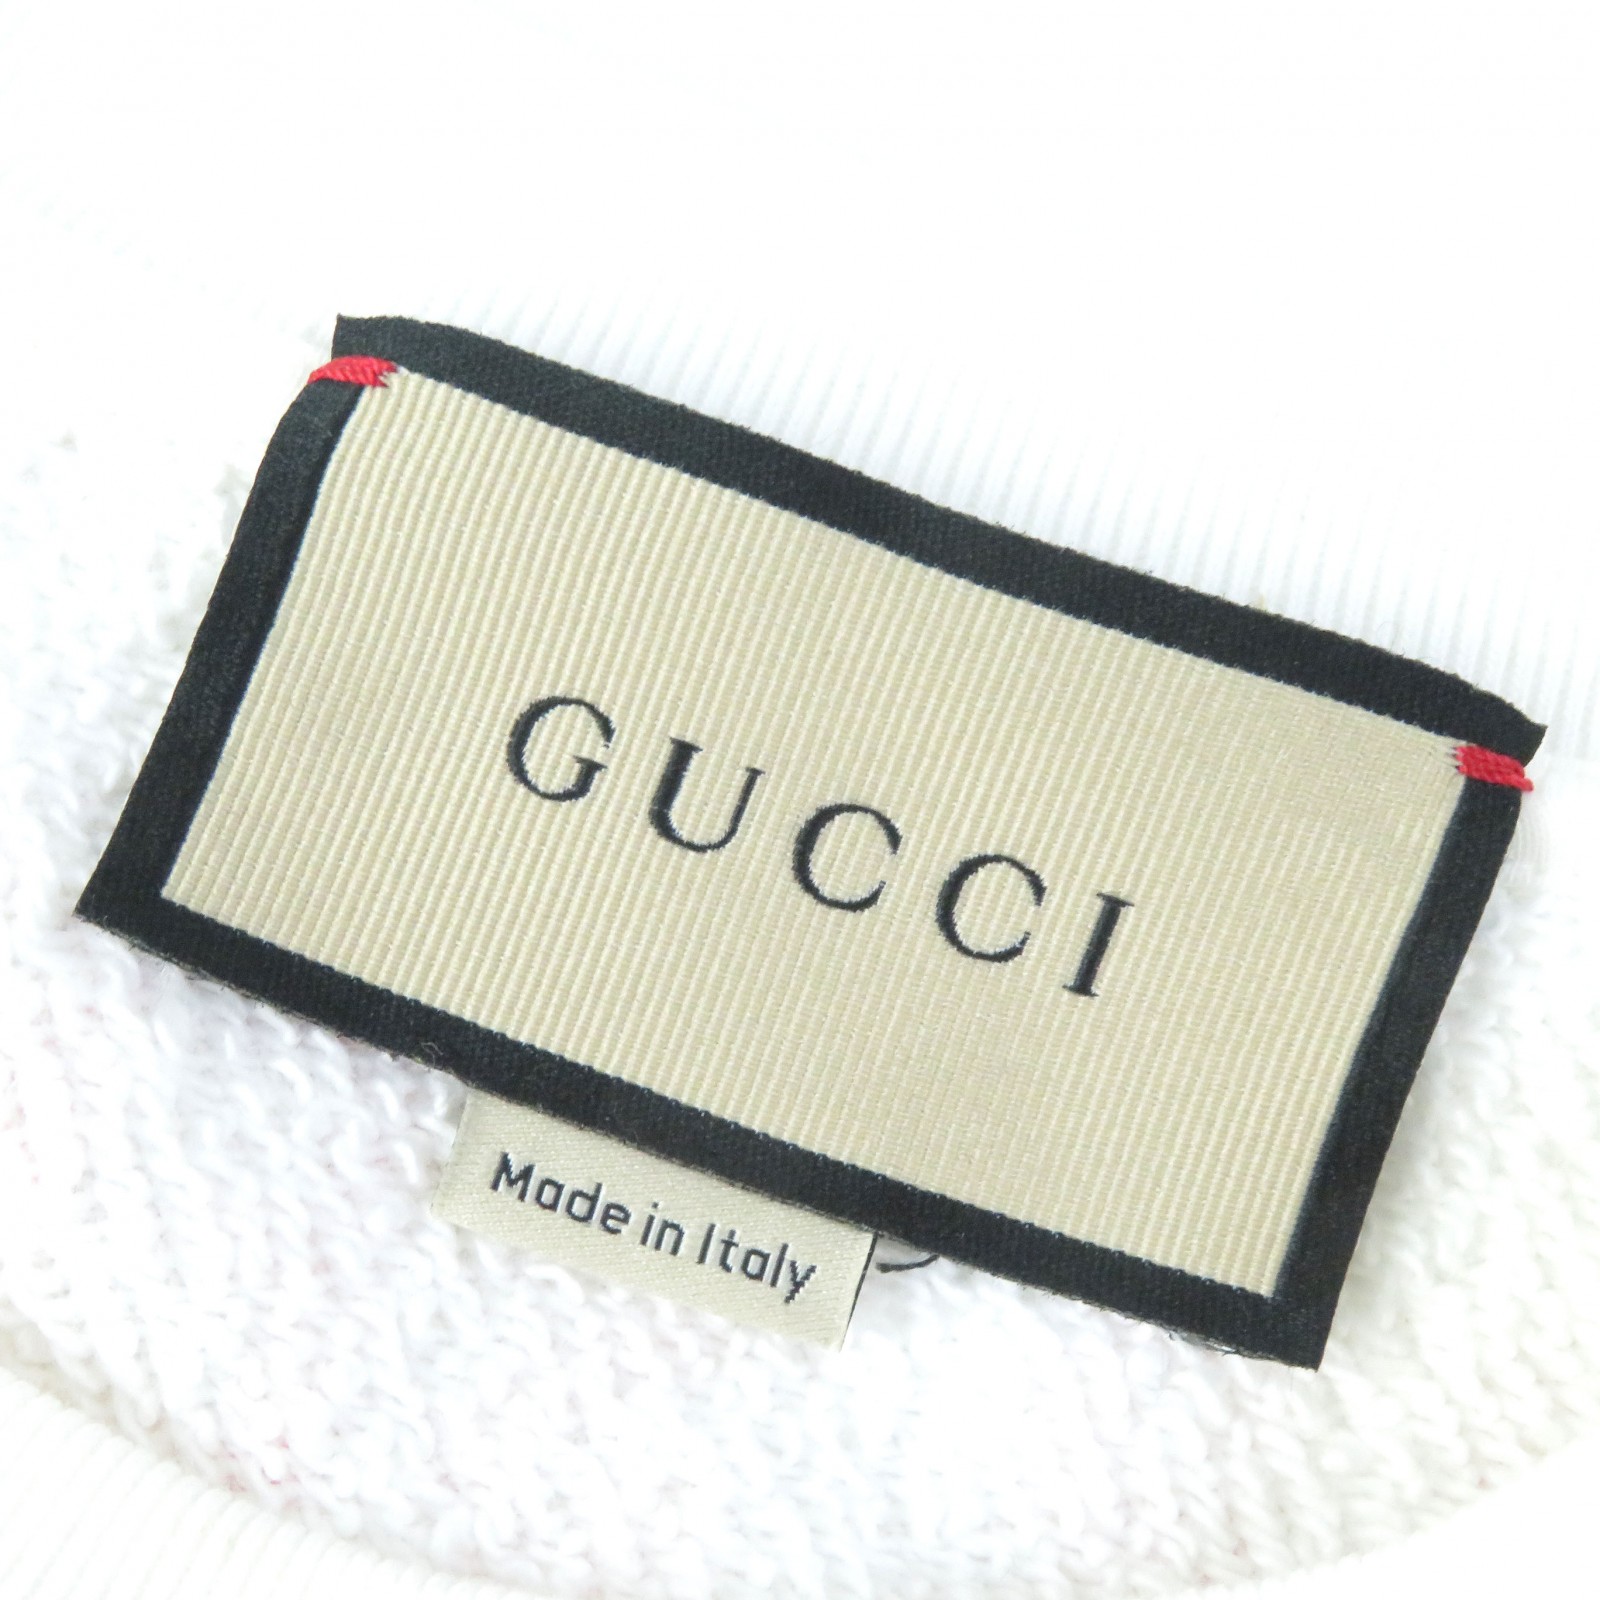  превосходный товар ^GUCCI Gucci 688219 хлопок JEAN HARLOW длинный рукав спортивная фуфайка футболка белый розовый S Италия производства стандартный товар женский 